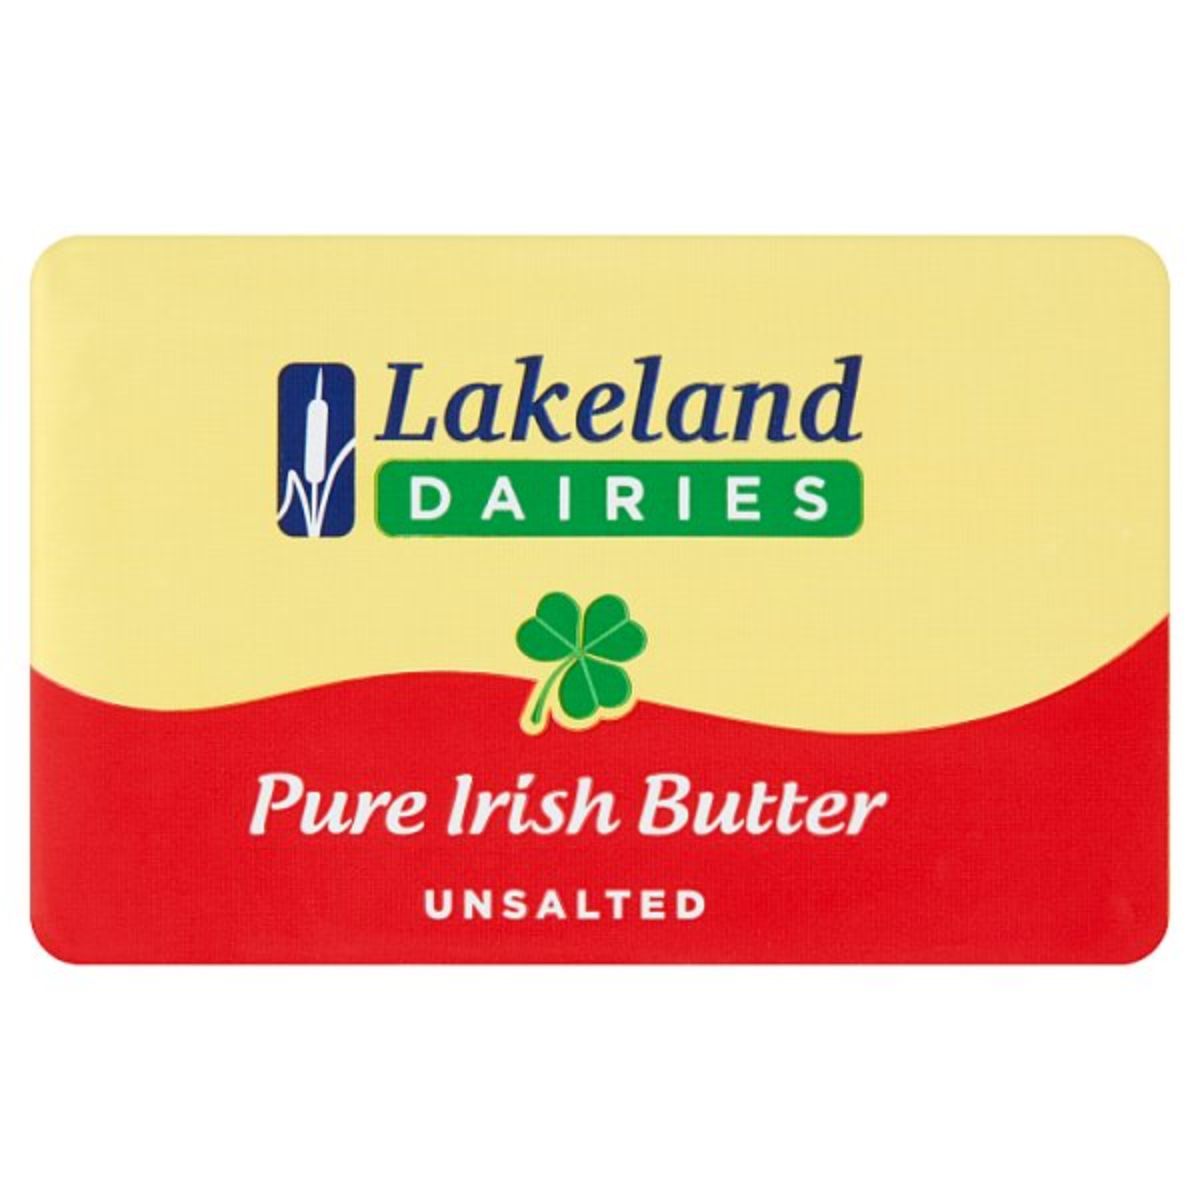 Lakeland Diaries - Pure Irish Butter Unsalted - 250g.